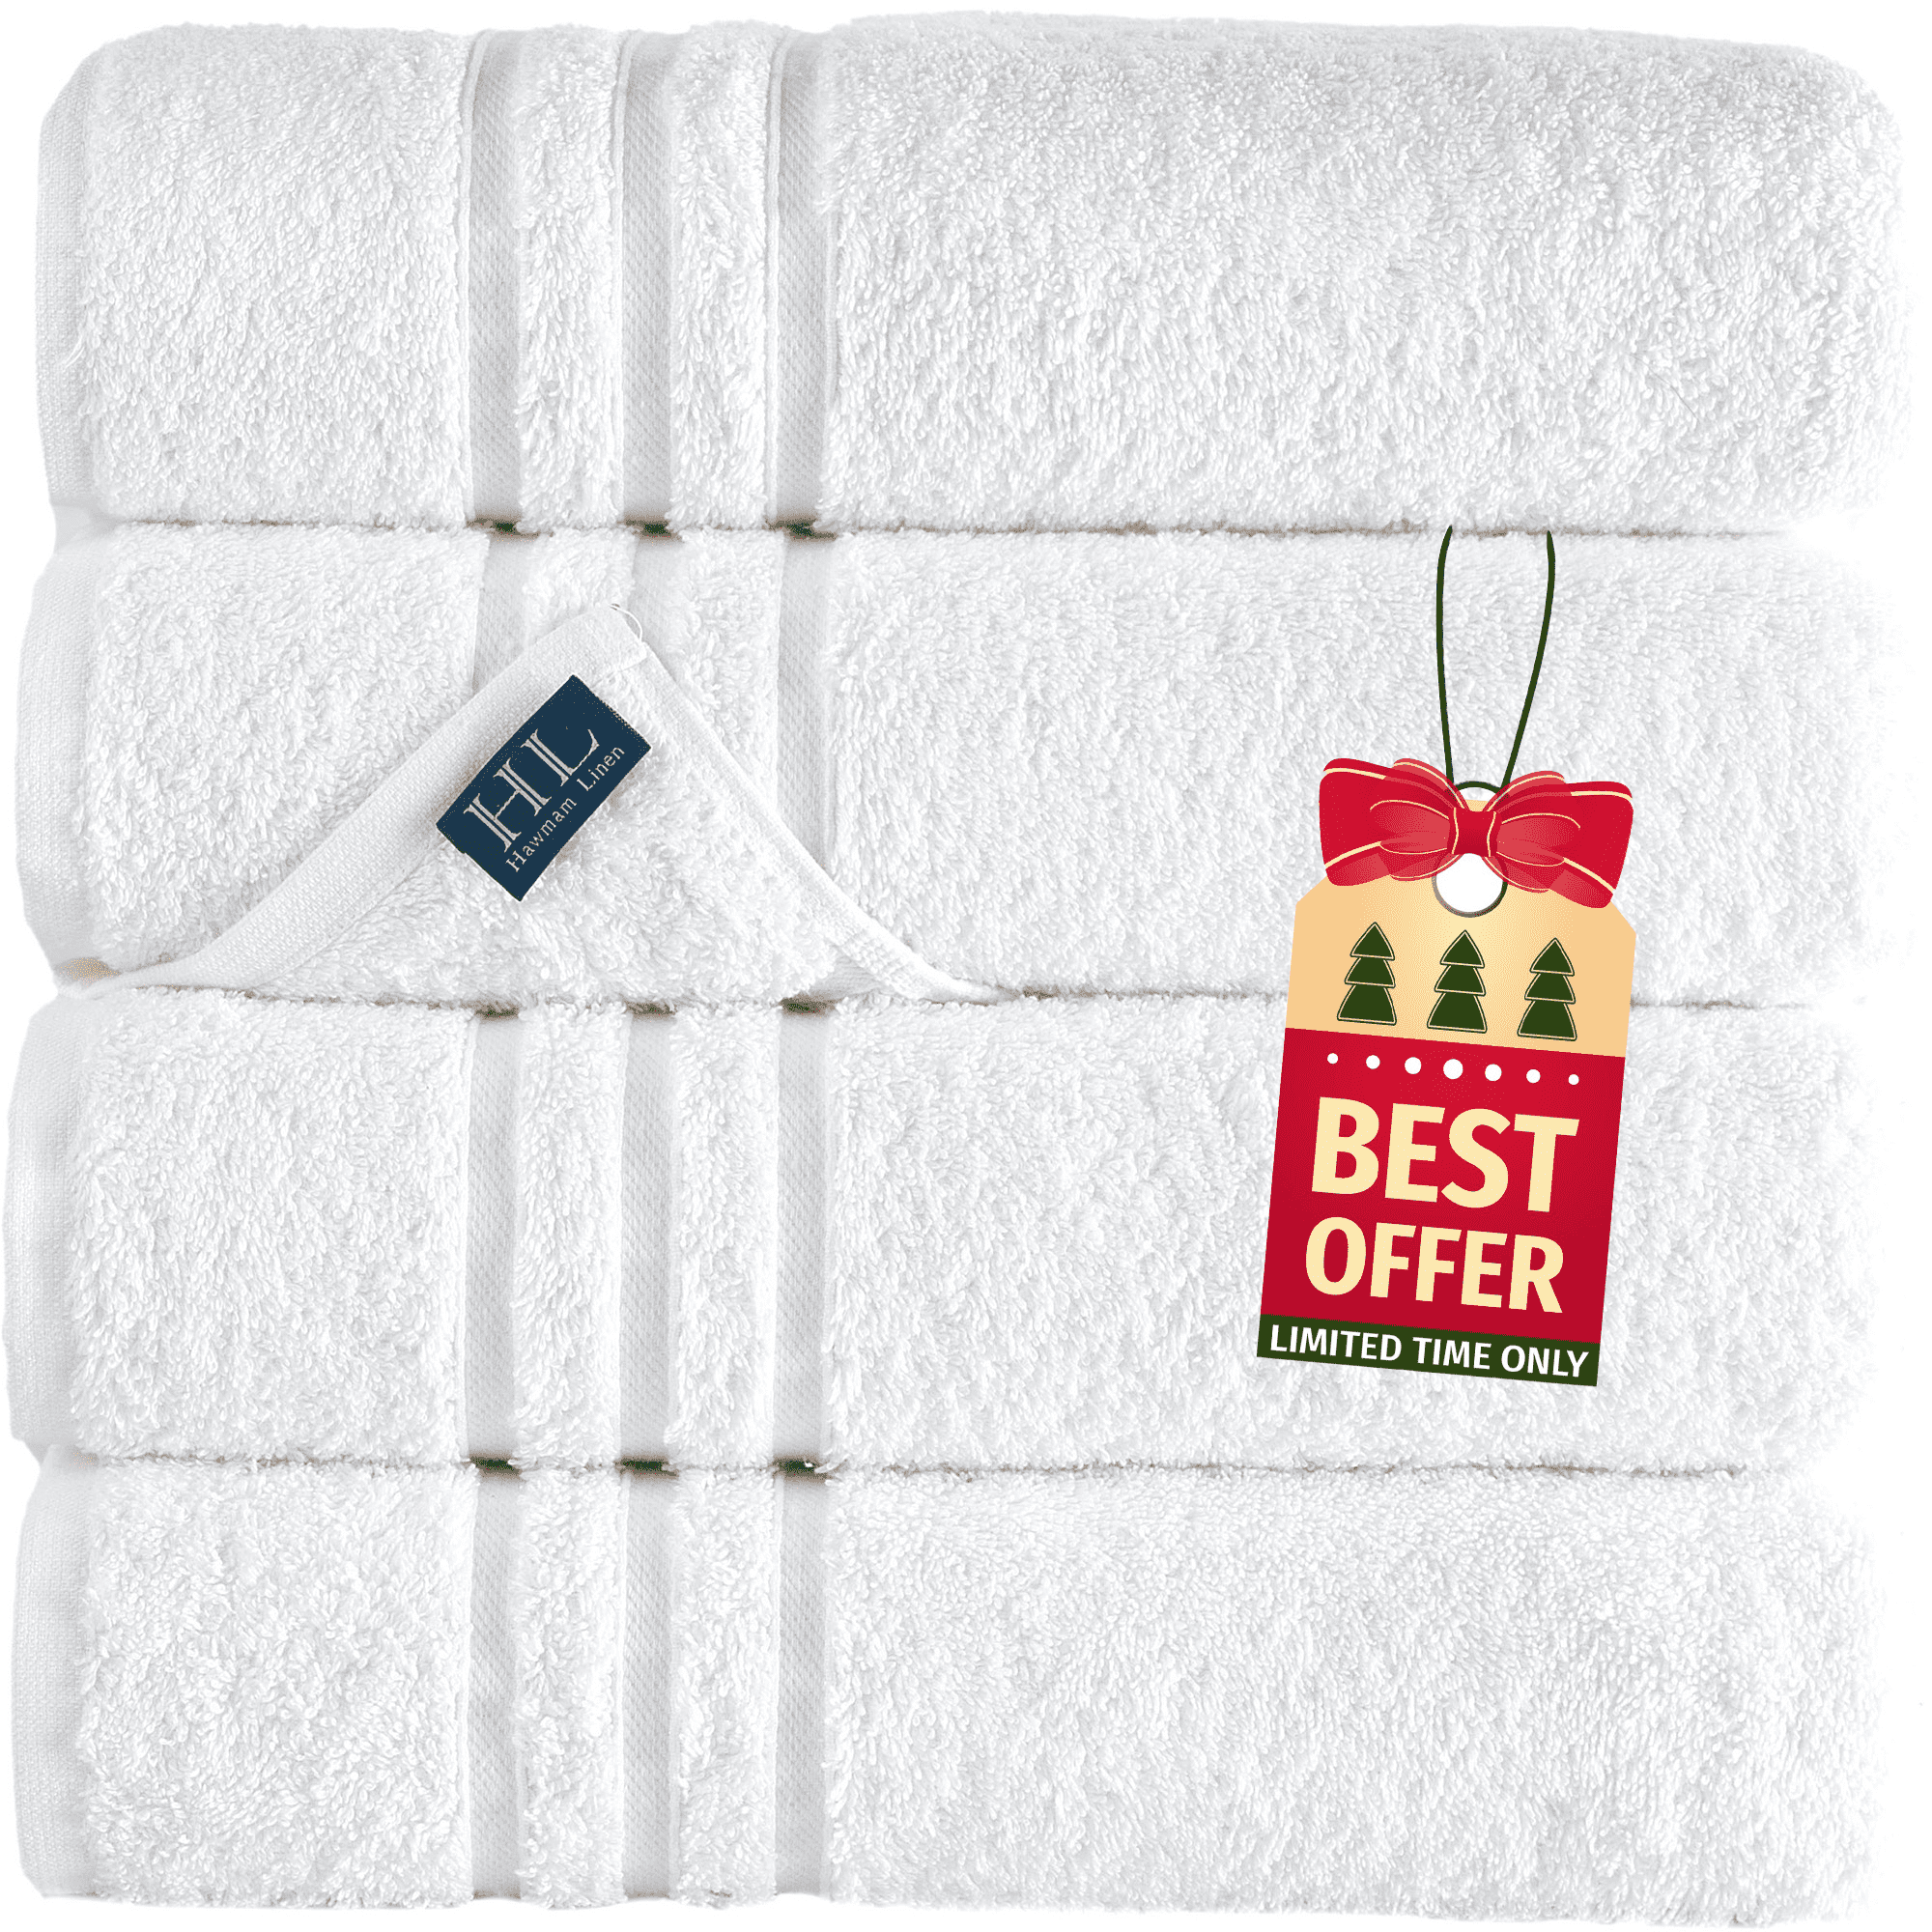 Baltic Linens Belvedere 100% Cotton 24-Piece Bath Towel Set, Taupe